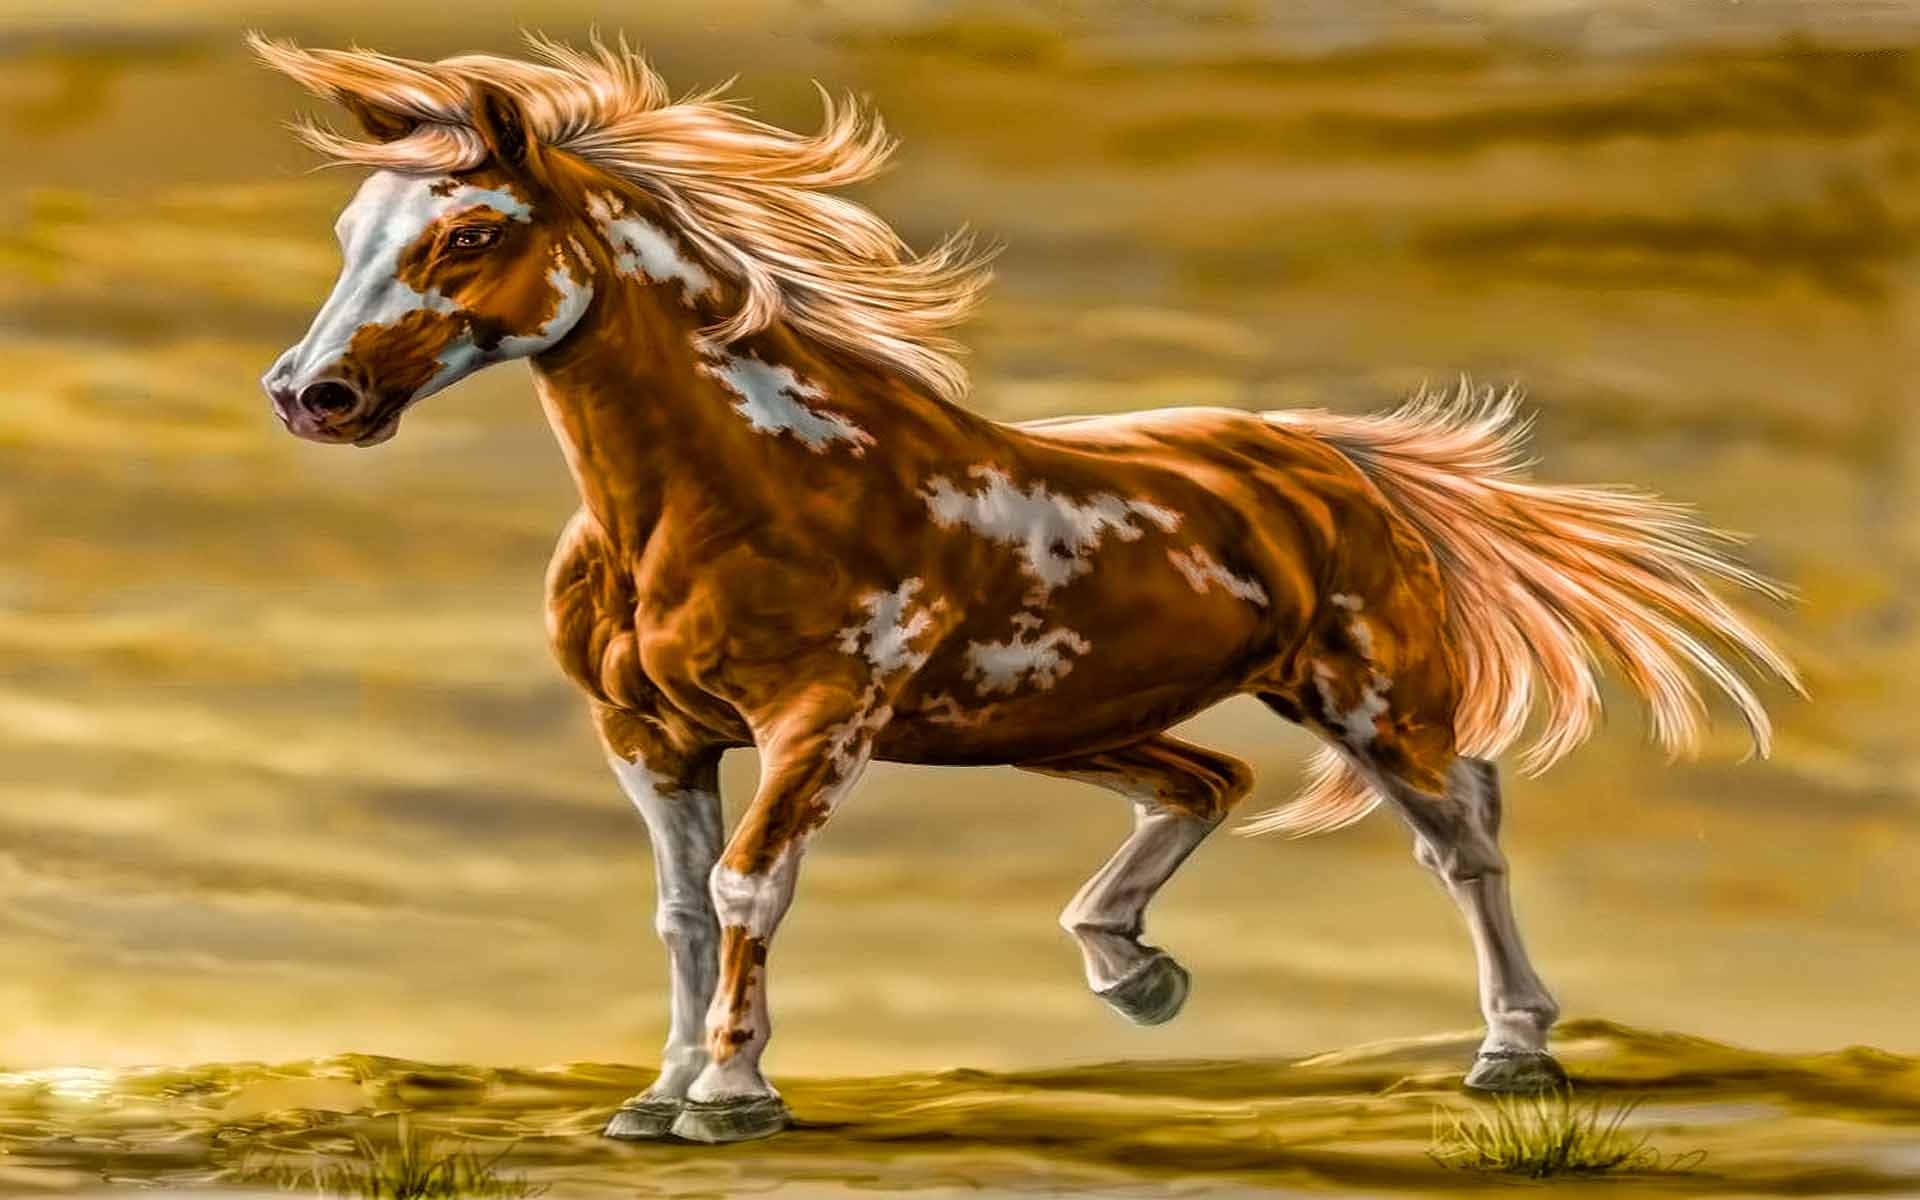 En ildbrystet bay hest står stolt mod en midnatssky. Wallpaper